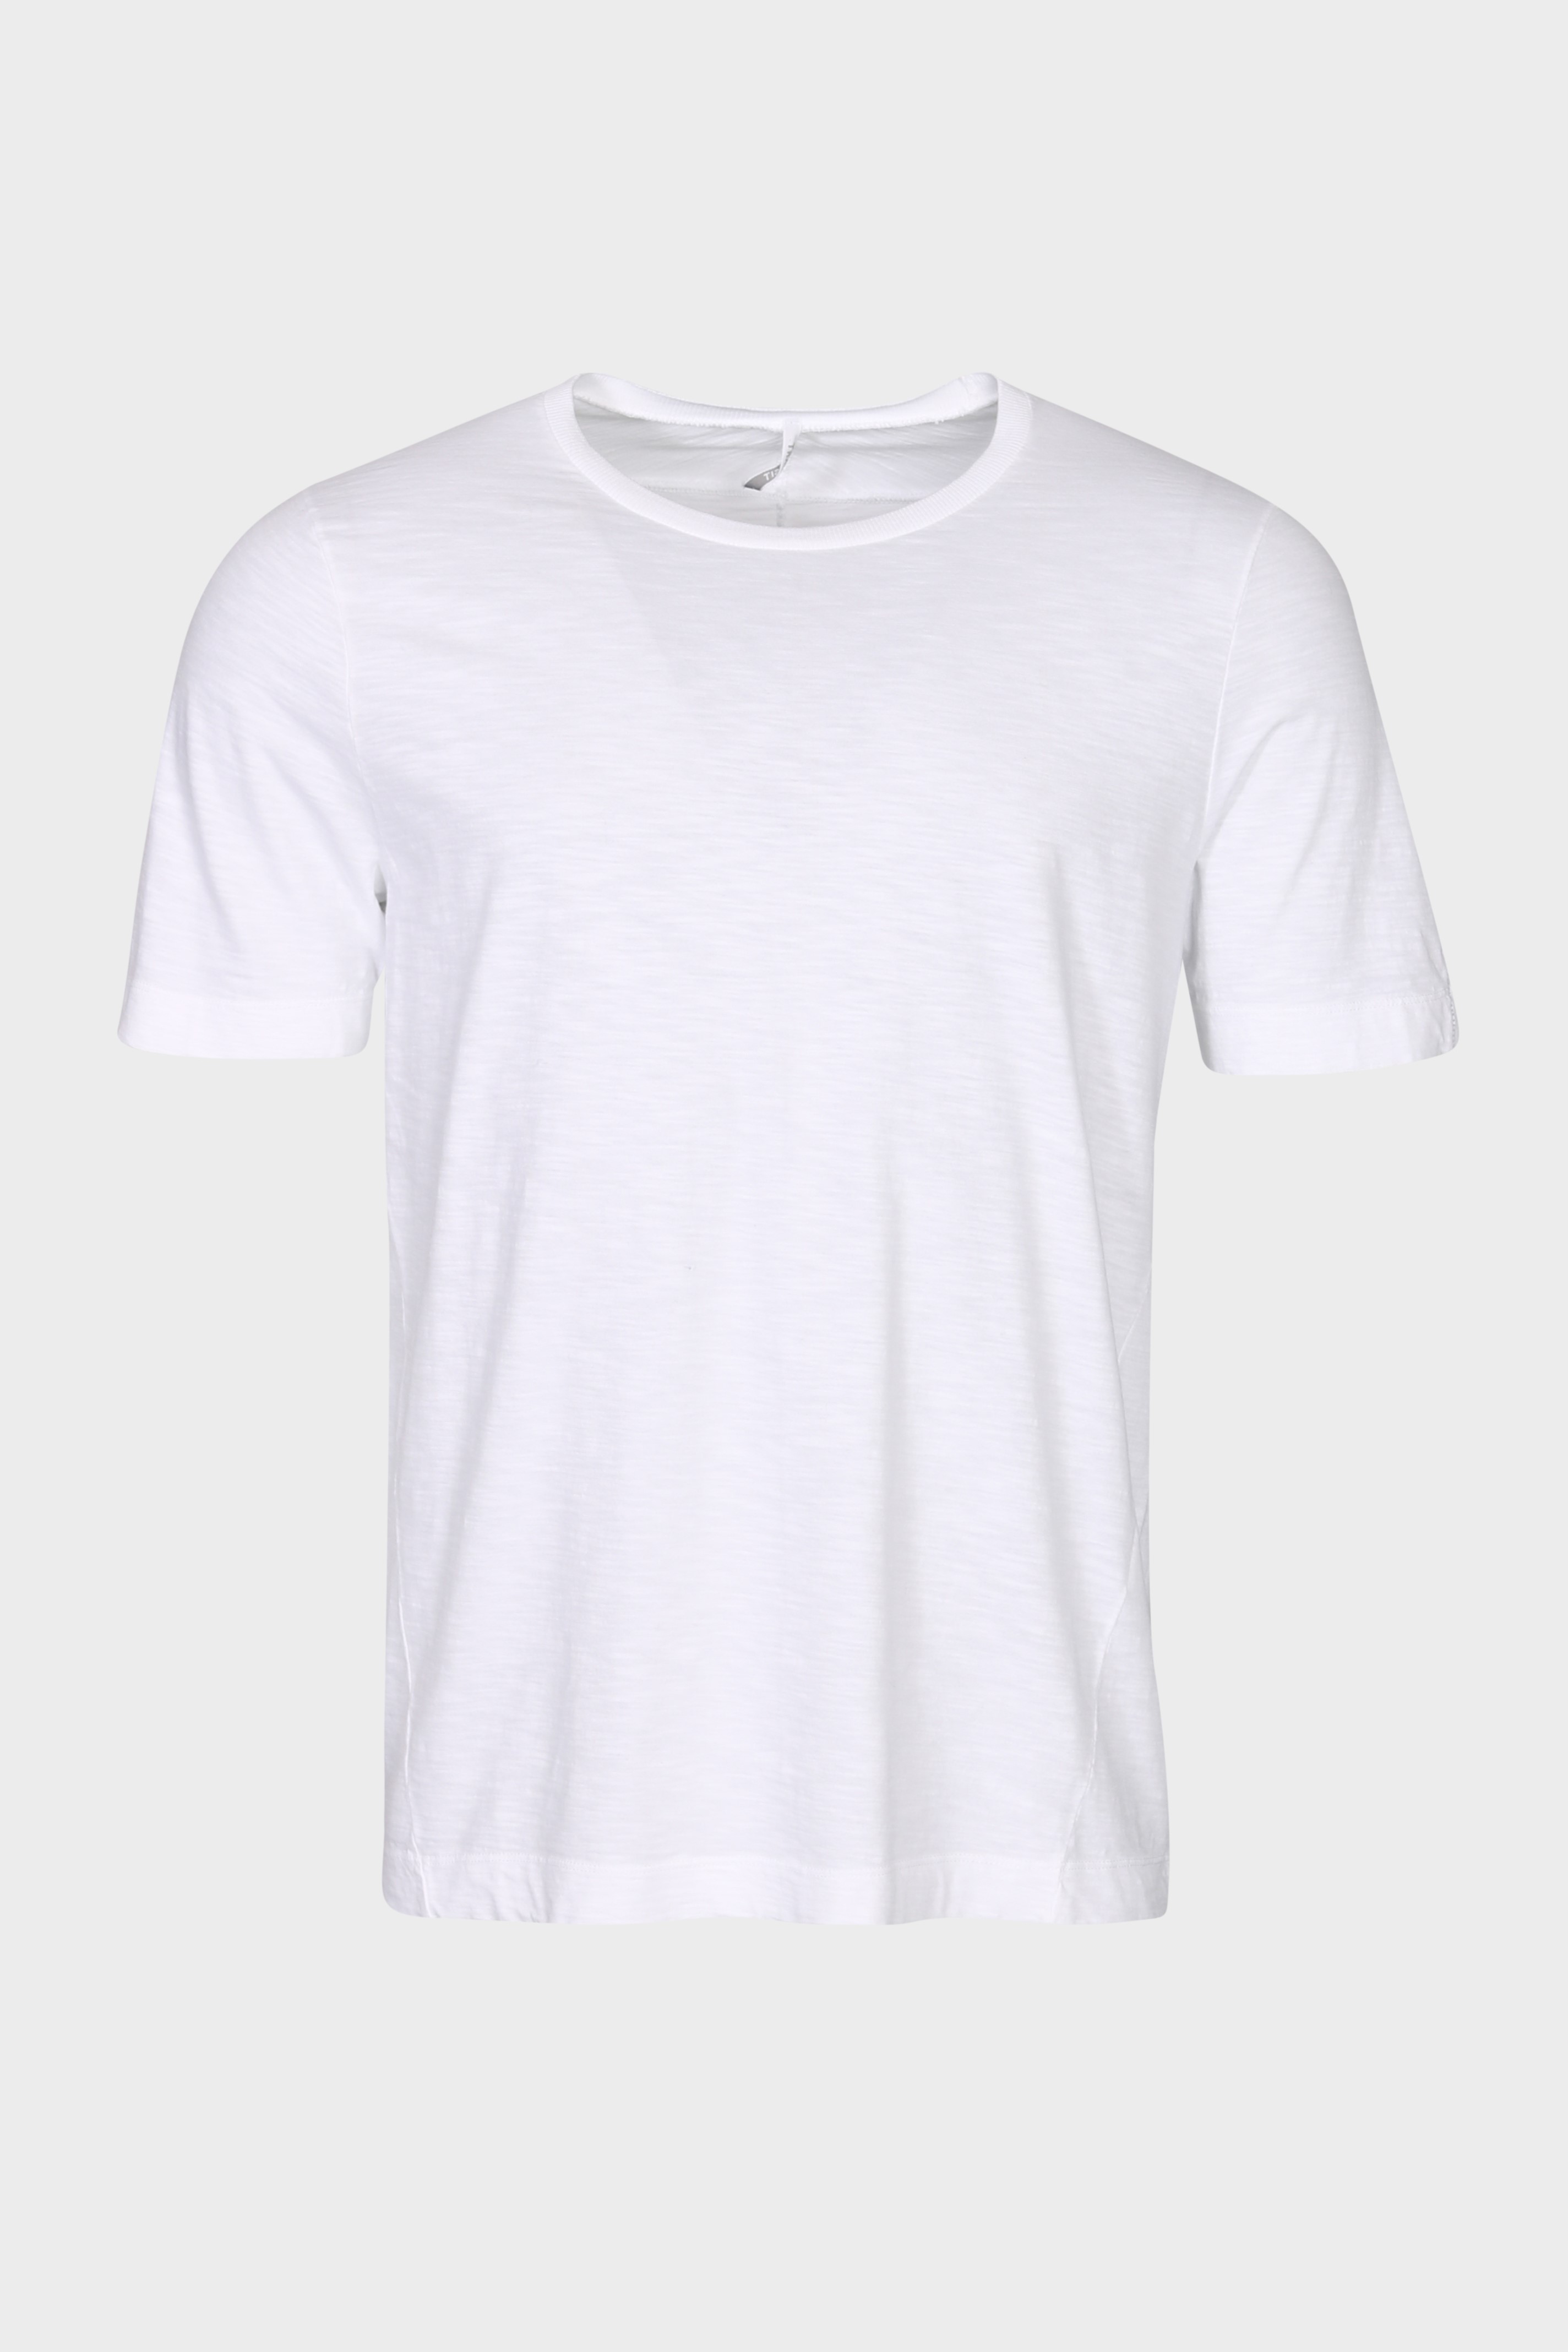 TRANSIT UOMO Cotton T-Shirt in White S